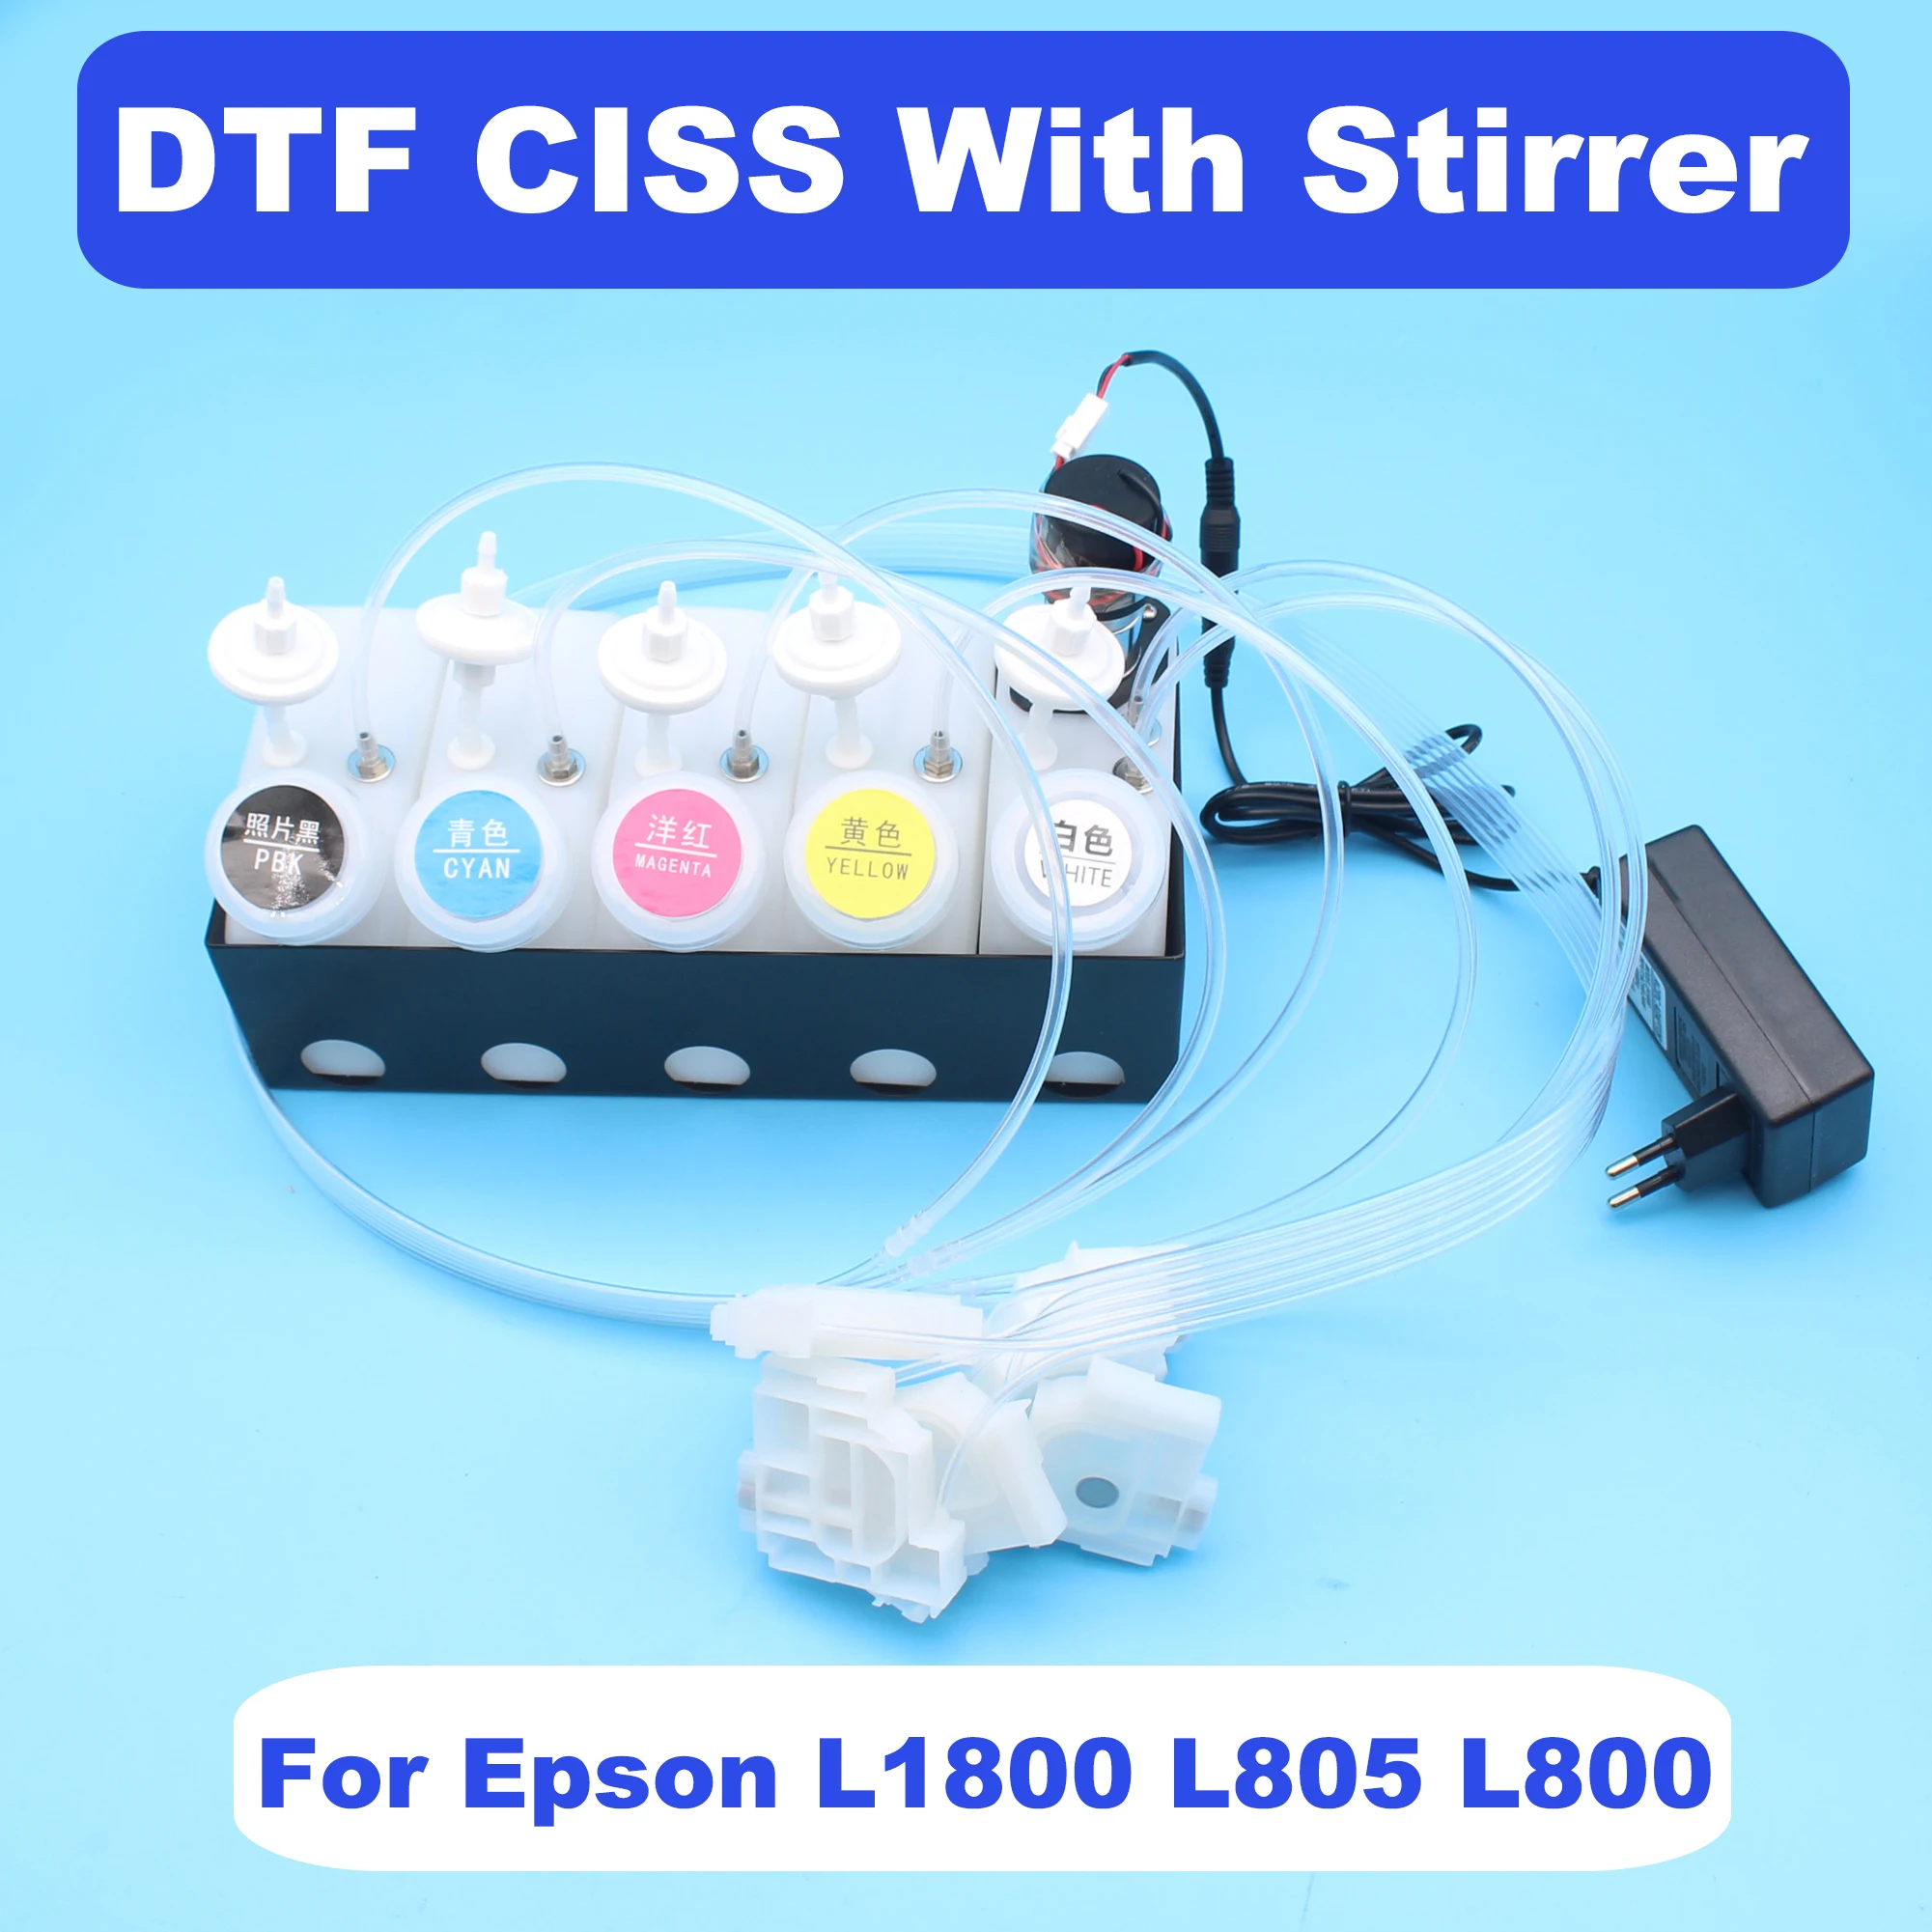 

DTF CISS Shake для Epson L1800 L800 L805 DTF, белый резервуар для чернил с мешалкой, Миксер для принтера, BIS резервуар, система непрерывной подачи чернил